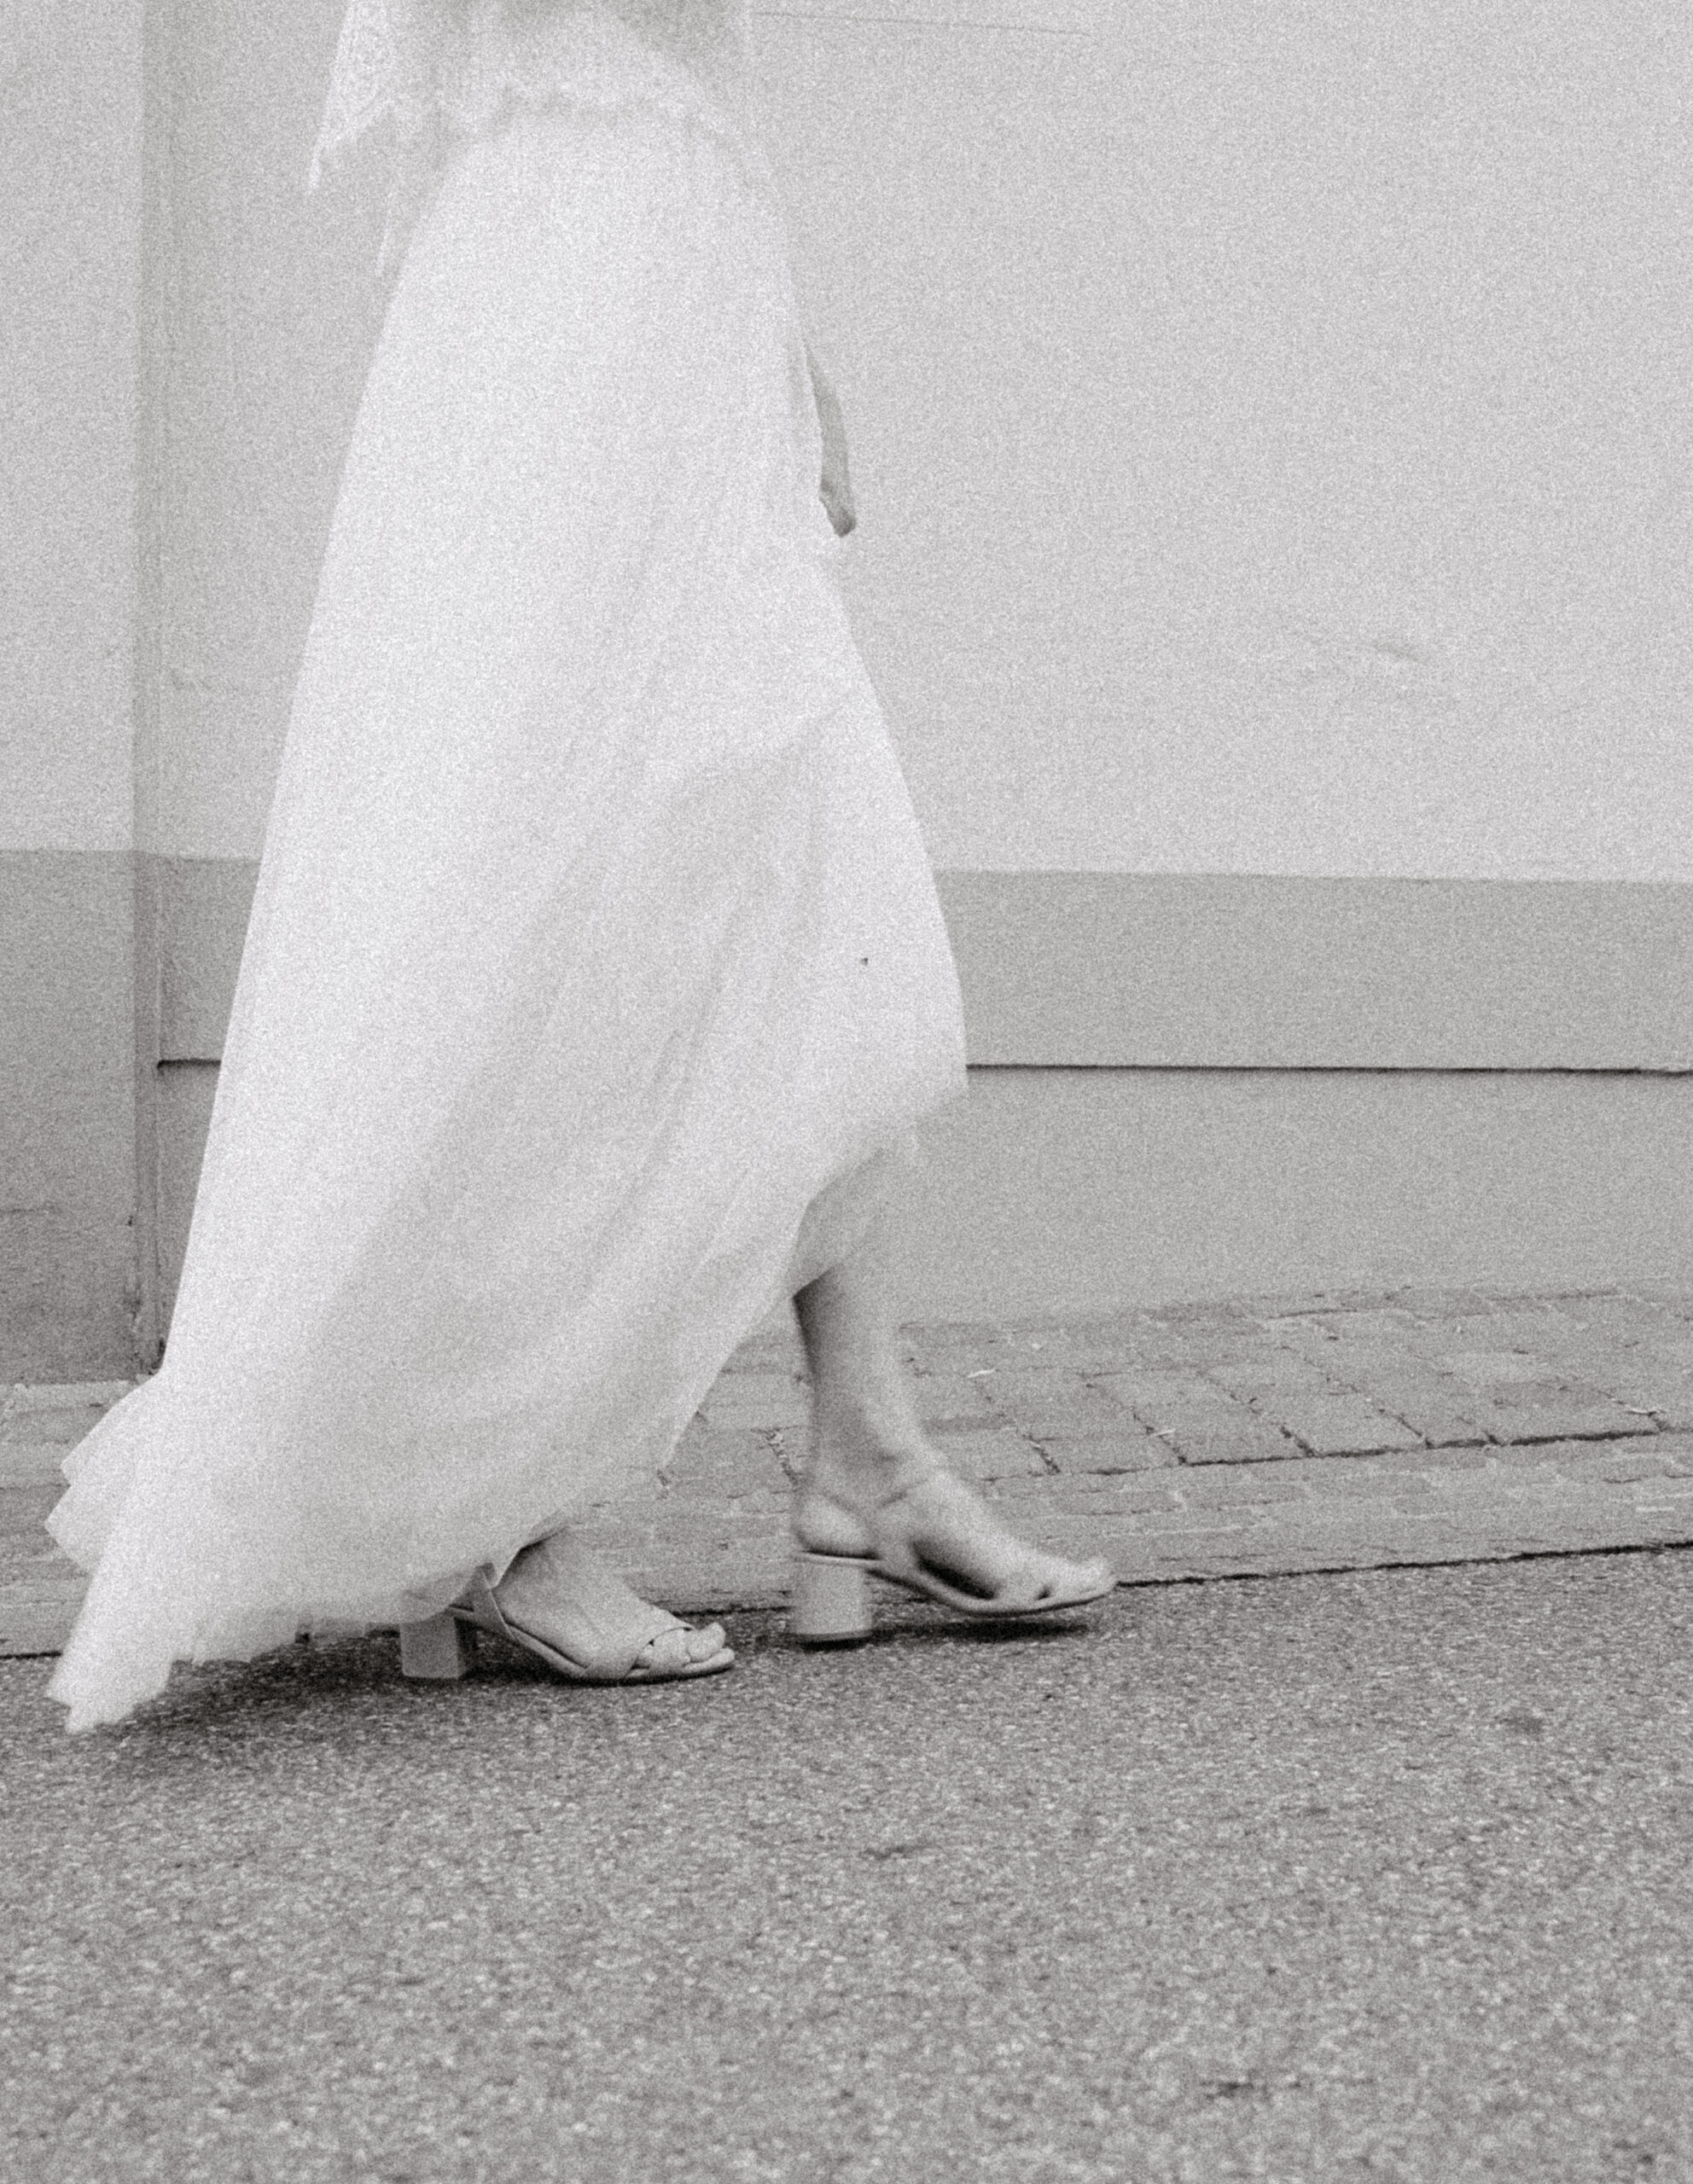 Detailaufnahme des Rocks und der offenen Brautschuhe der Braut während dem laufen. Bild in Schwarz Weiß.